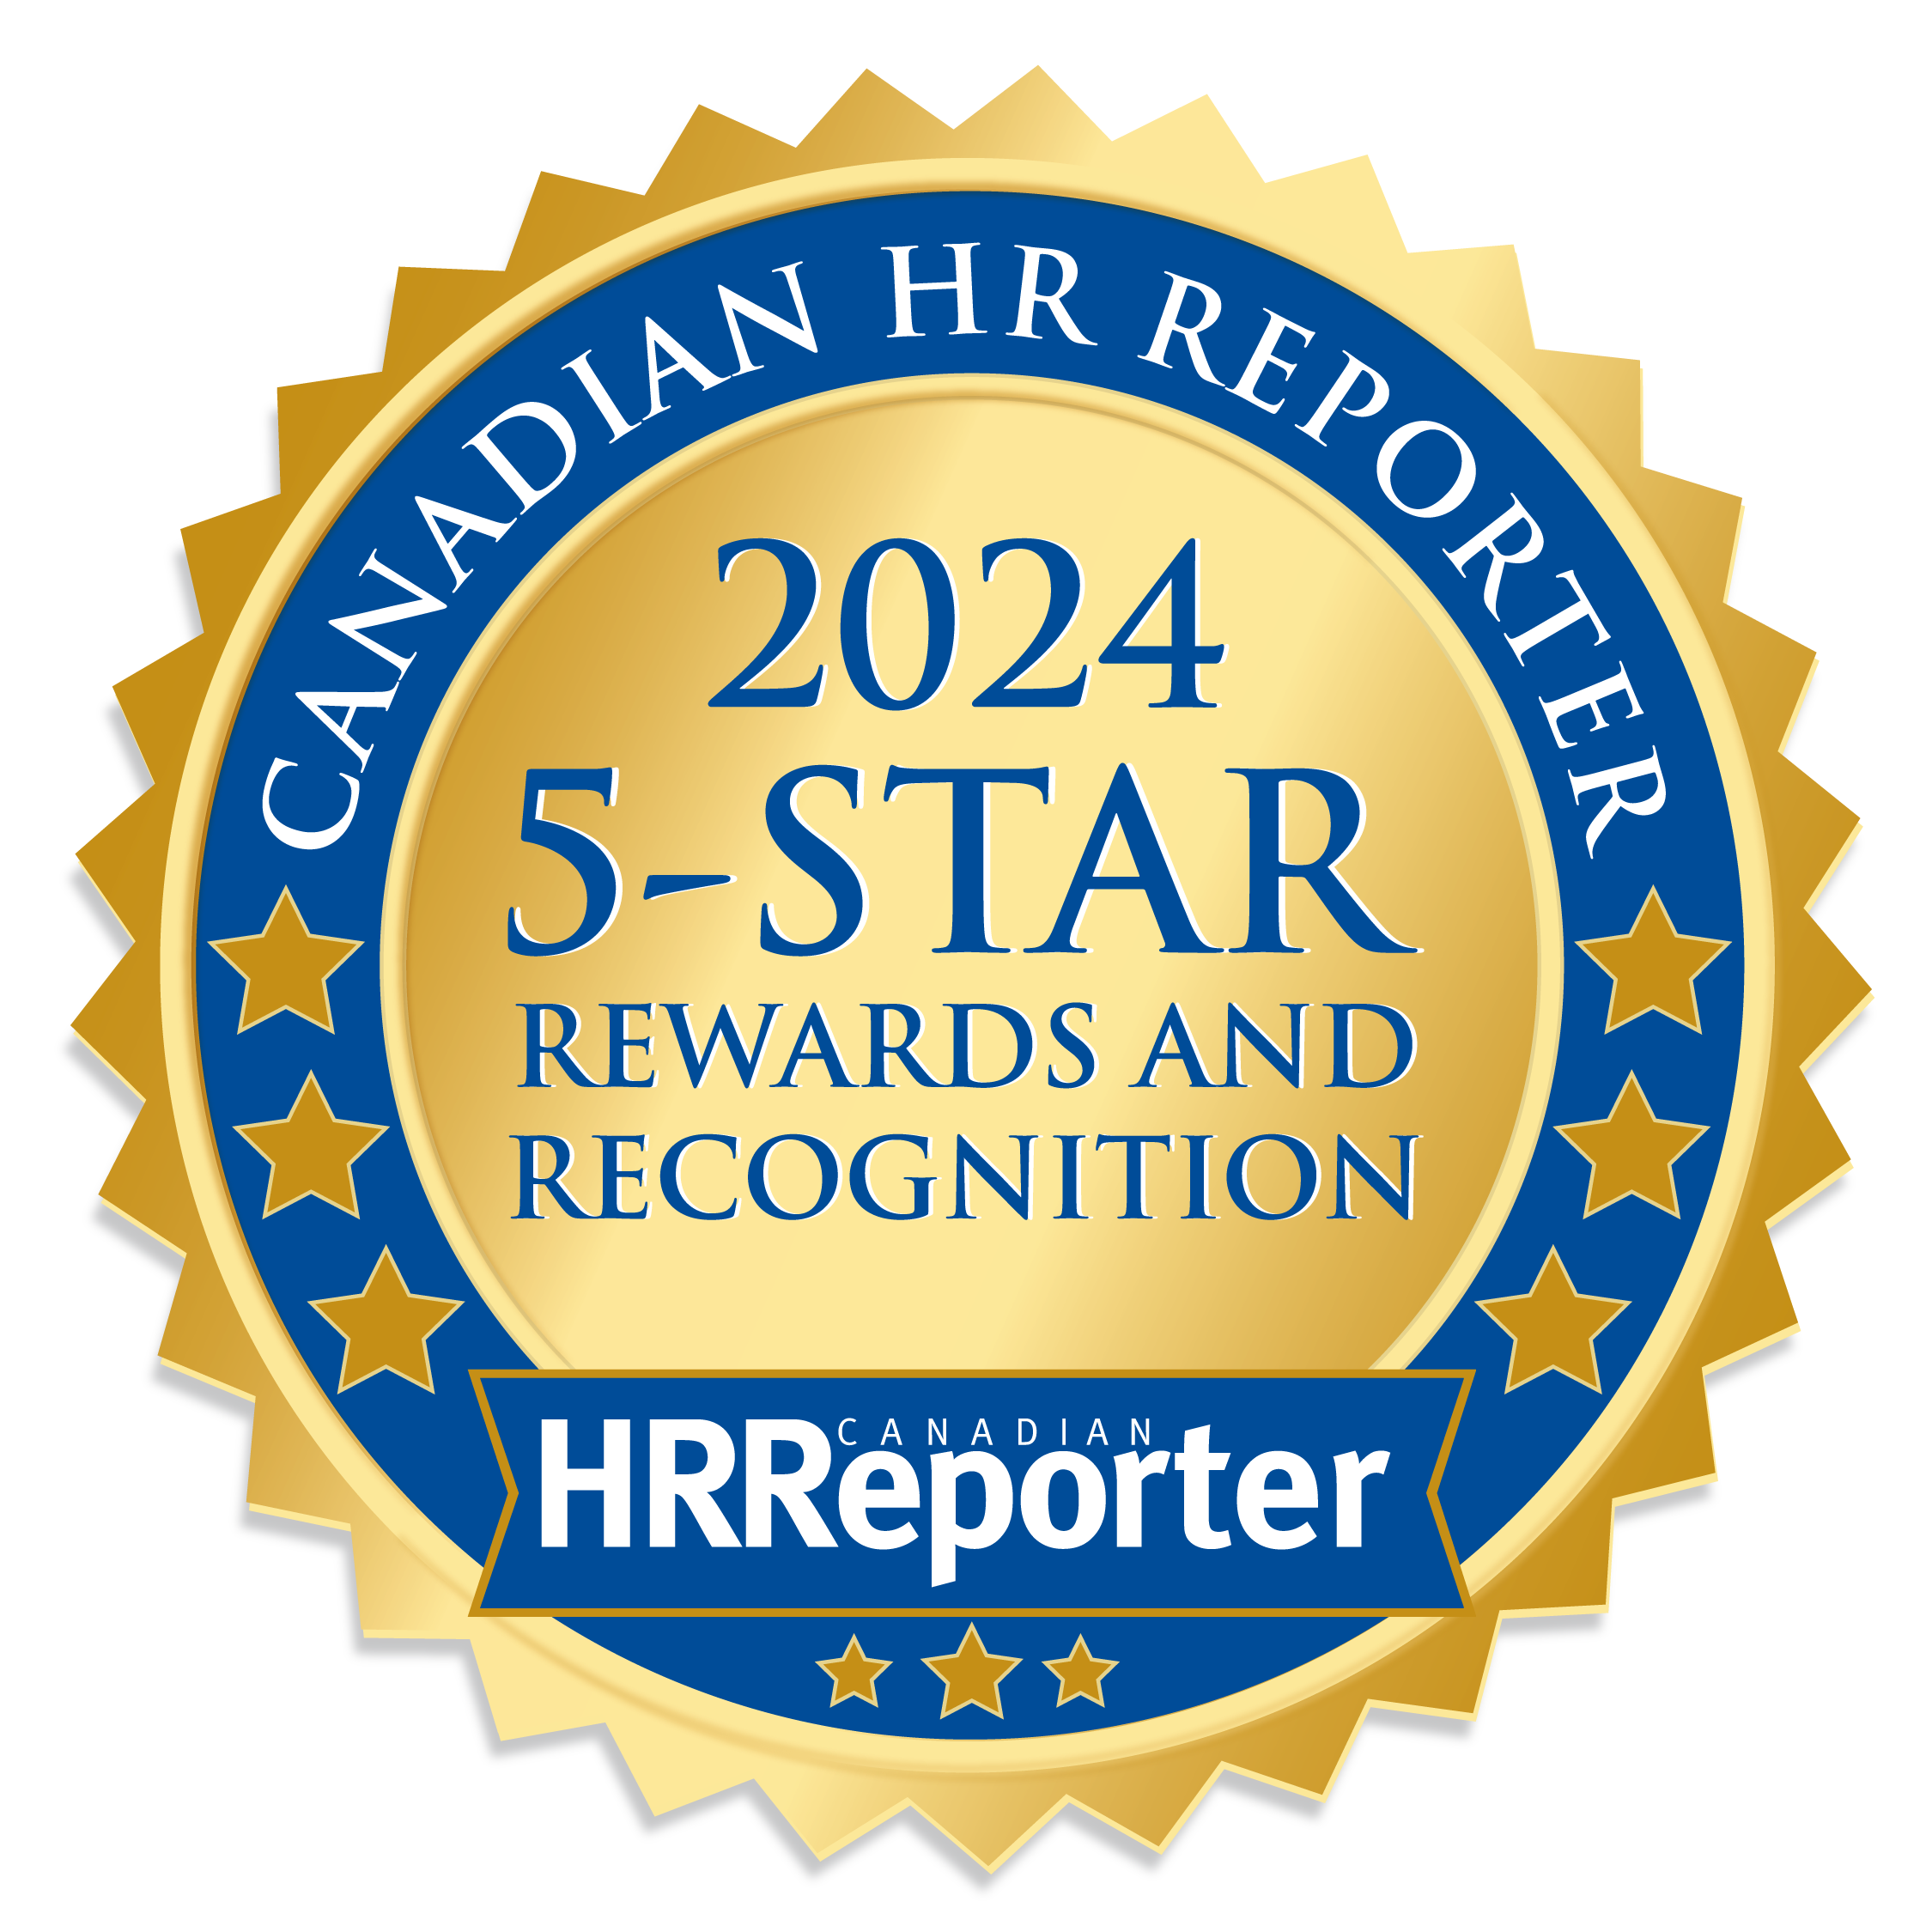 The Best Company Employee Rewards Programs in Canada | 5-Star Winners